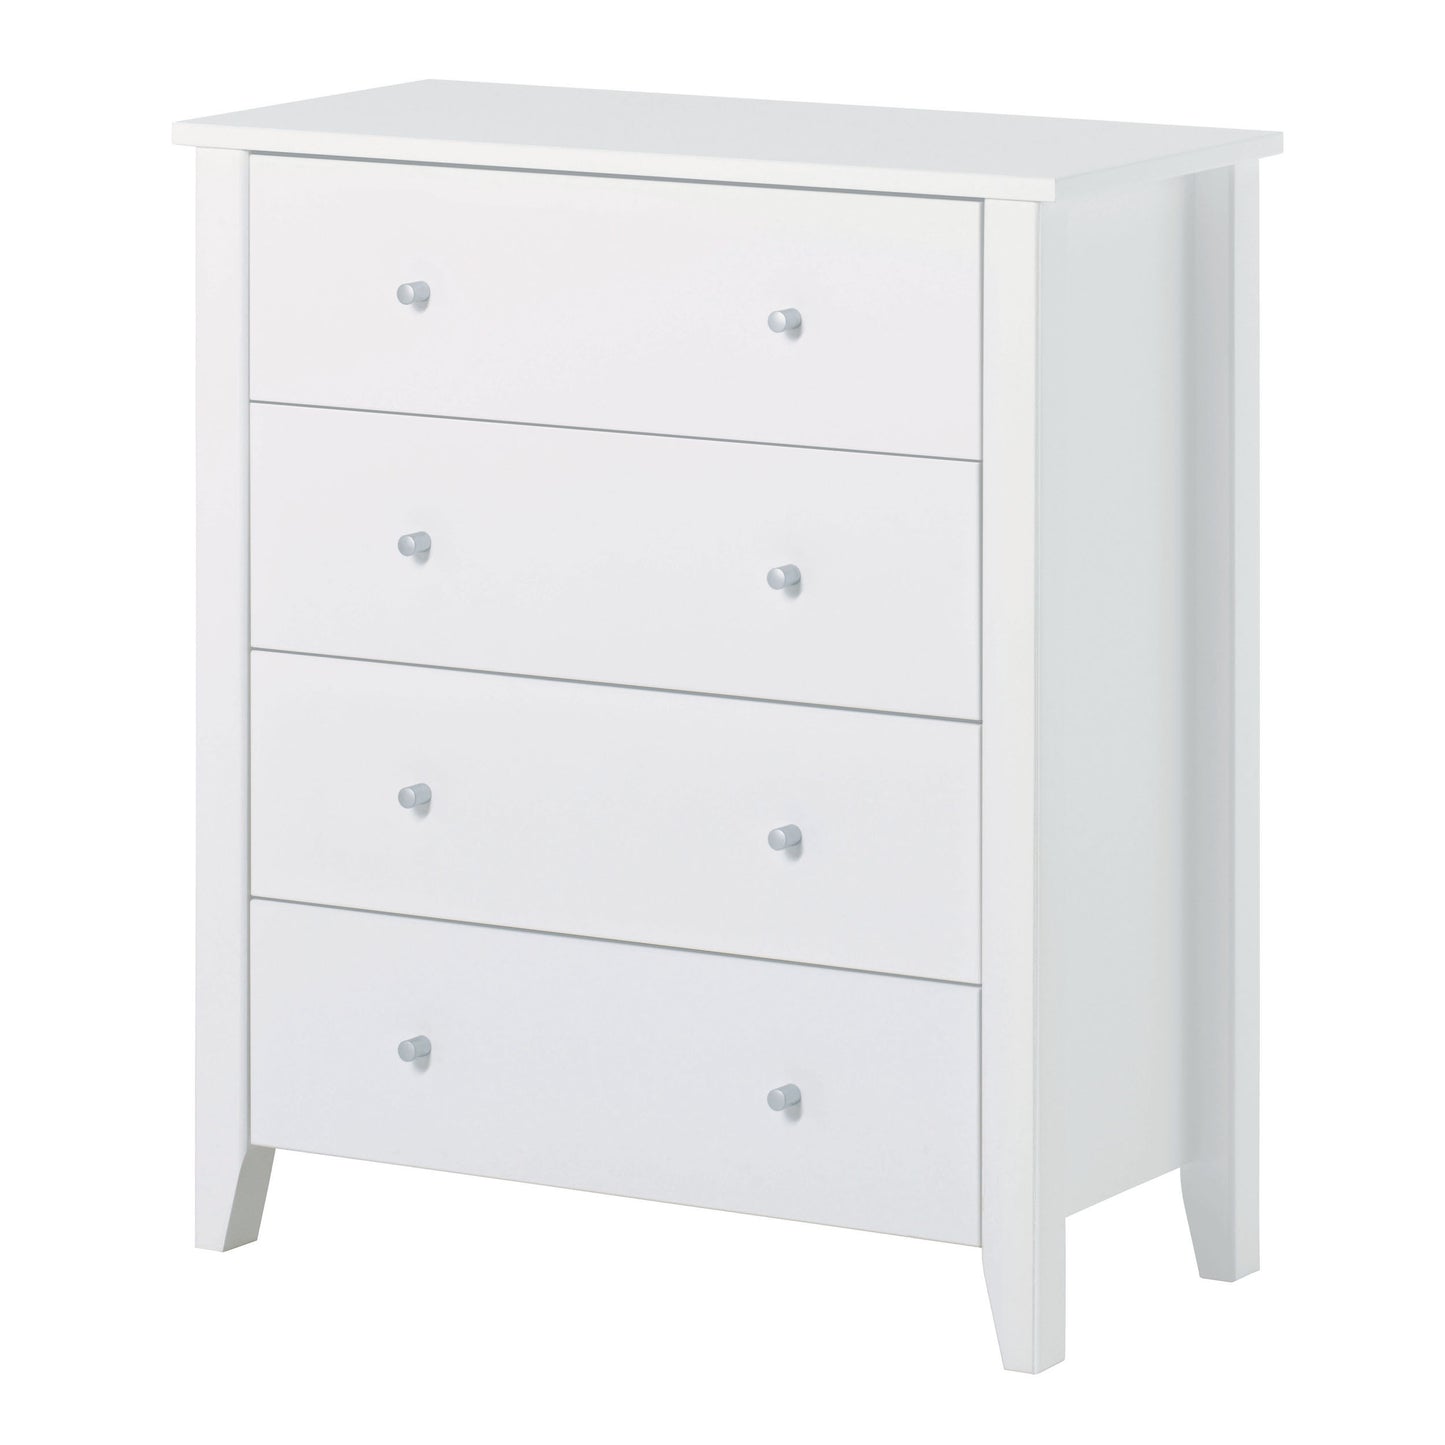 Hoppekids 'Christian' 4 Drawer Dresser/Changing Table - White